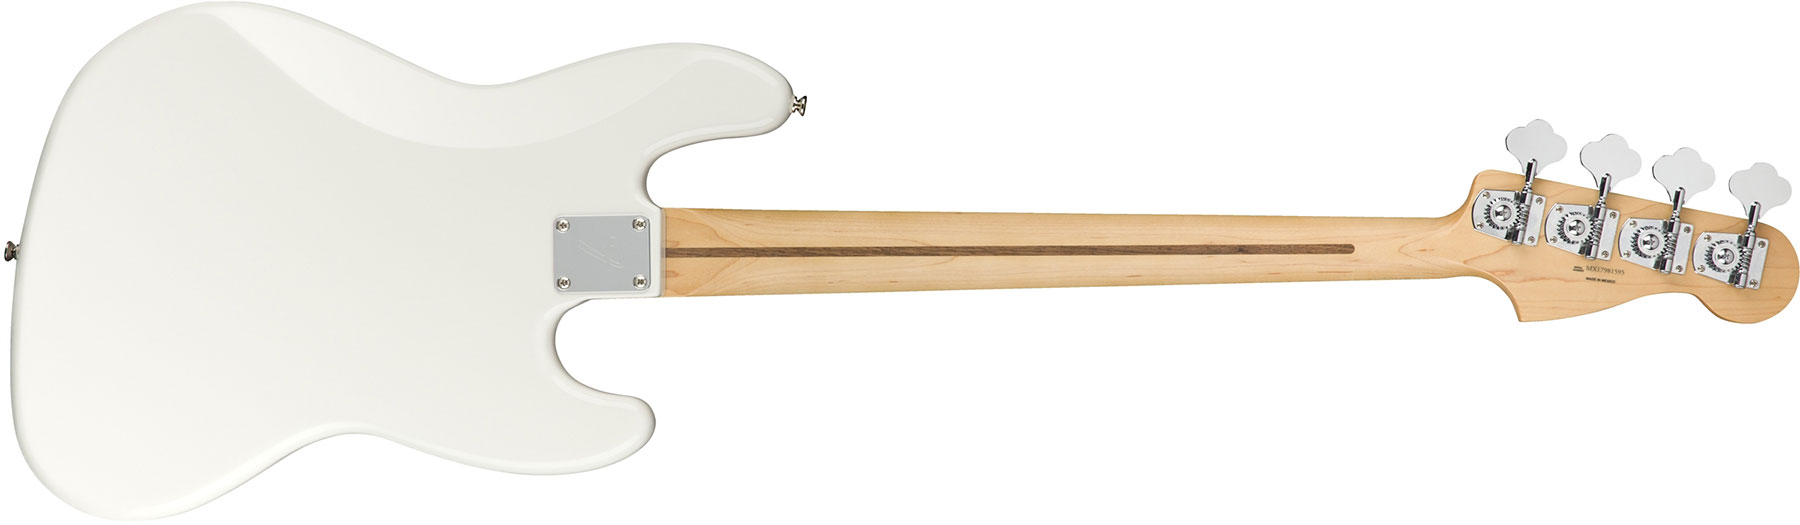 Fender Jazz Bass Player Lh Gaucher Mex Mn - Polar White - Basse Électrique Solid Body - Variation 1